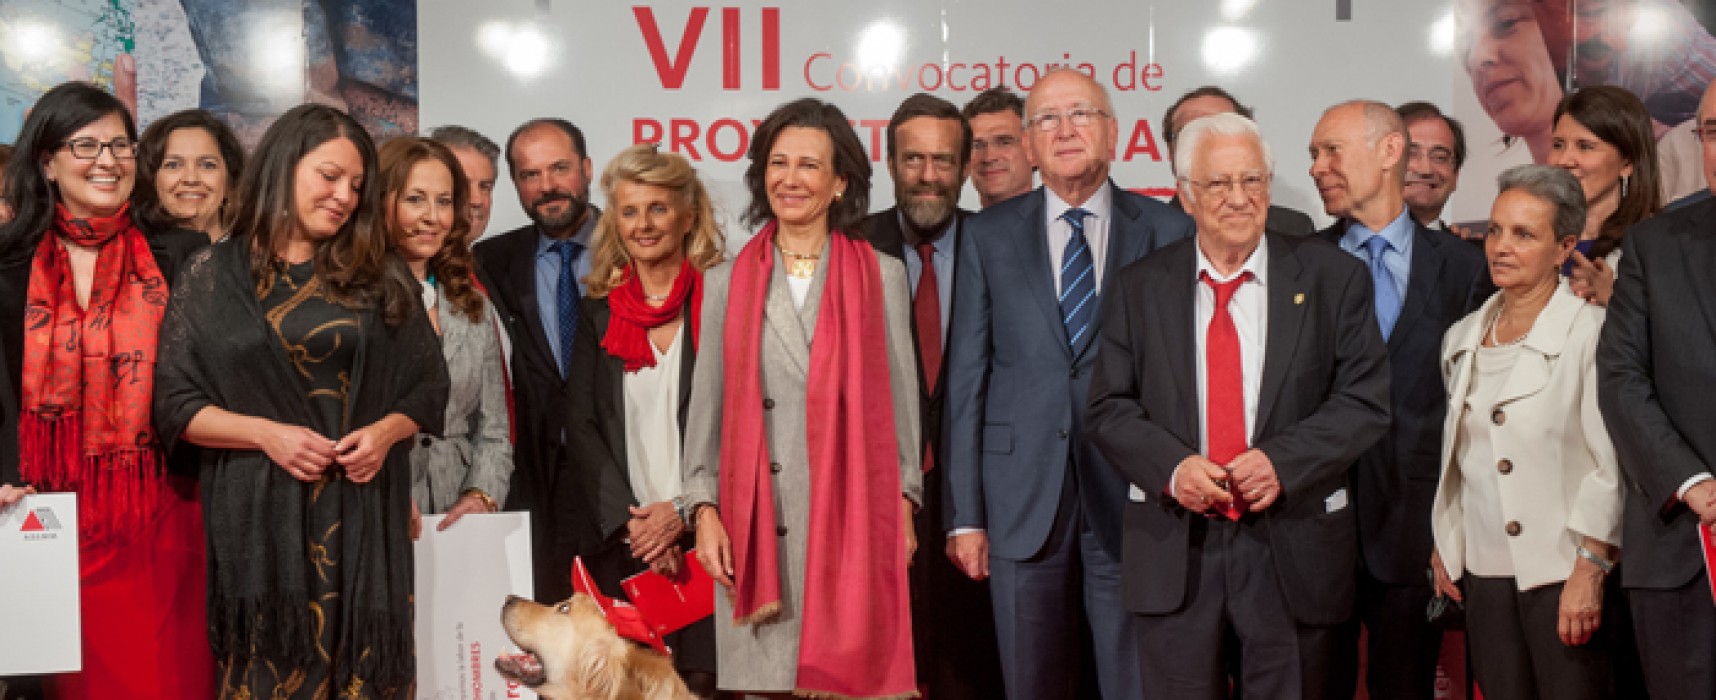 Los empleados de Banco Santander entregan 368.000 euros a diez ONG españolas